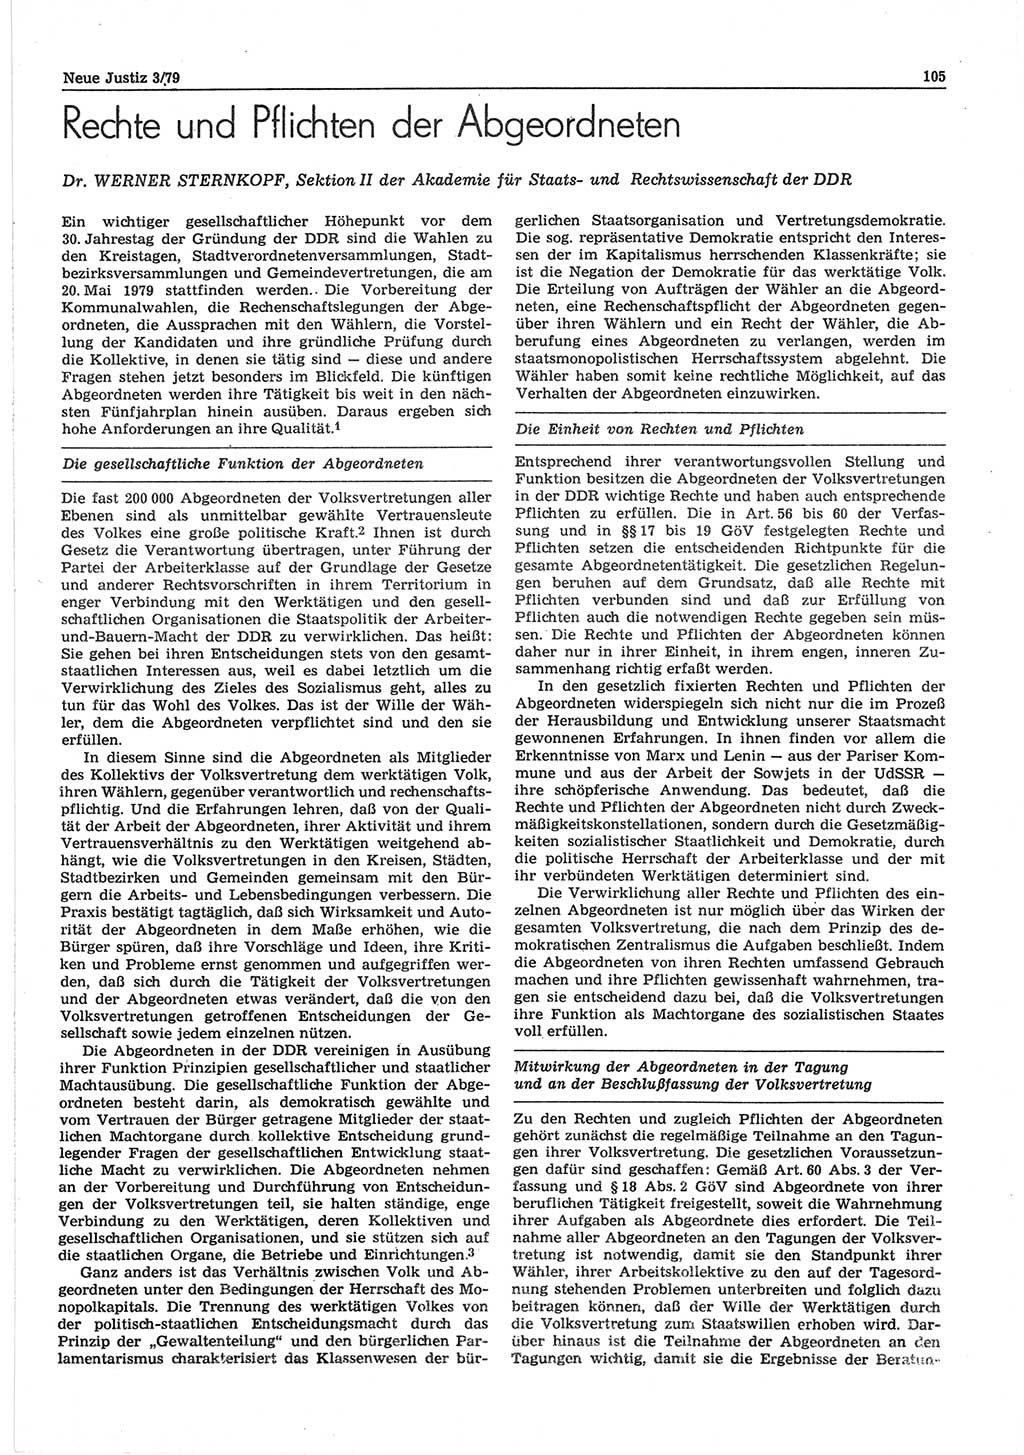 Neue Justiz (NJ), Zeitschrift für sozialistisches Recht und Gesetzlichkeit [Deutsche Demokratische Republik (DDR)], 33. Jahrgang 1979, Seite 105 (NJ DDR 1979, S. 105)